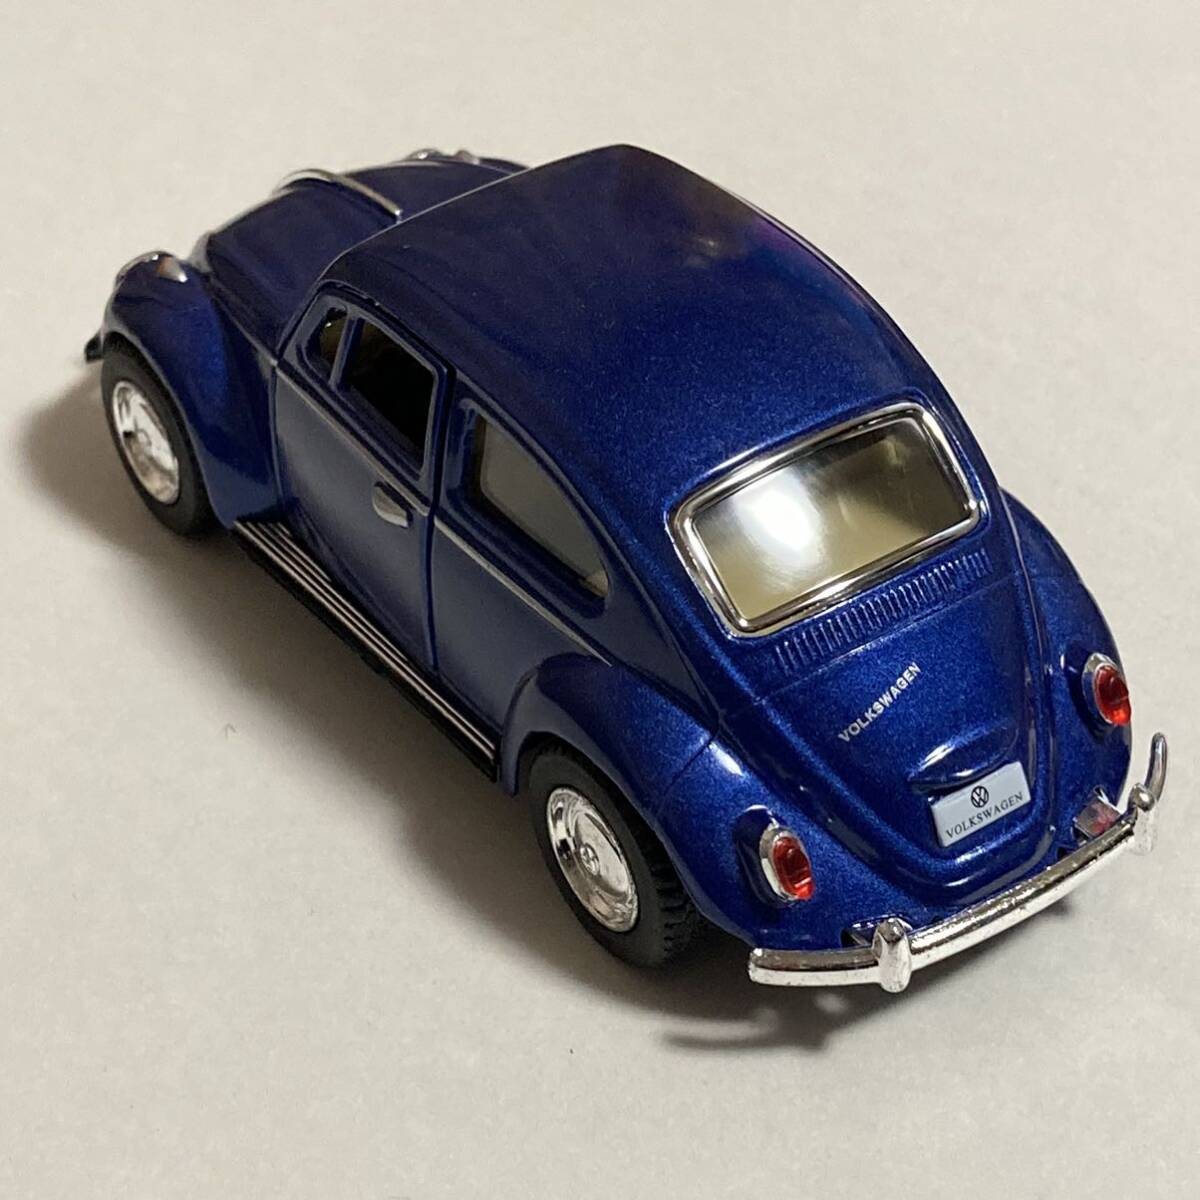 送料無料 キンスマート フォルクスワーゲン クラシカル ビートル ミニカー 車模型 Volkswagen beetle KiNSMART ダイキャストカー 青 ブルー_画像3